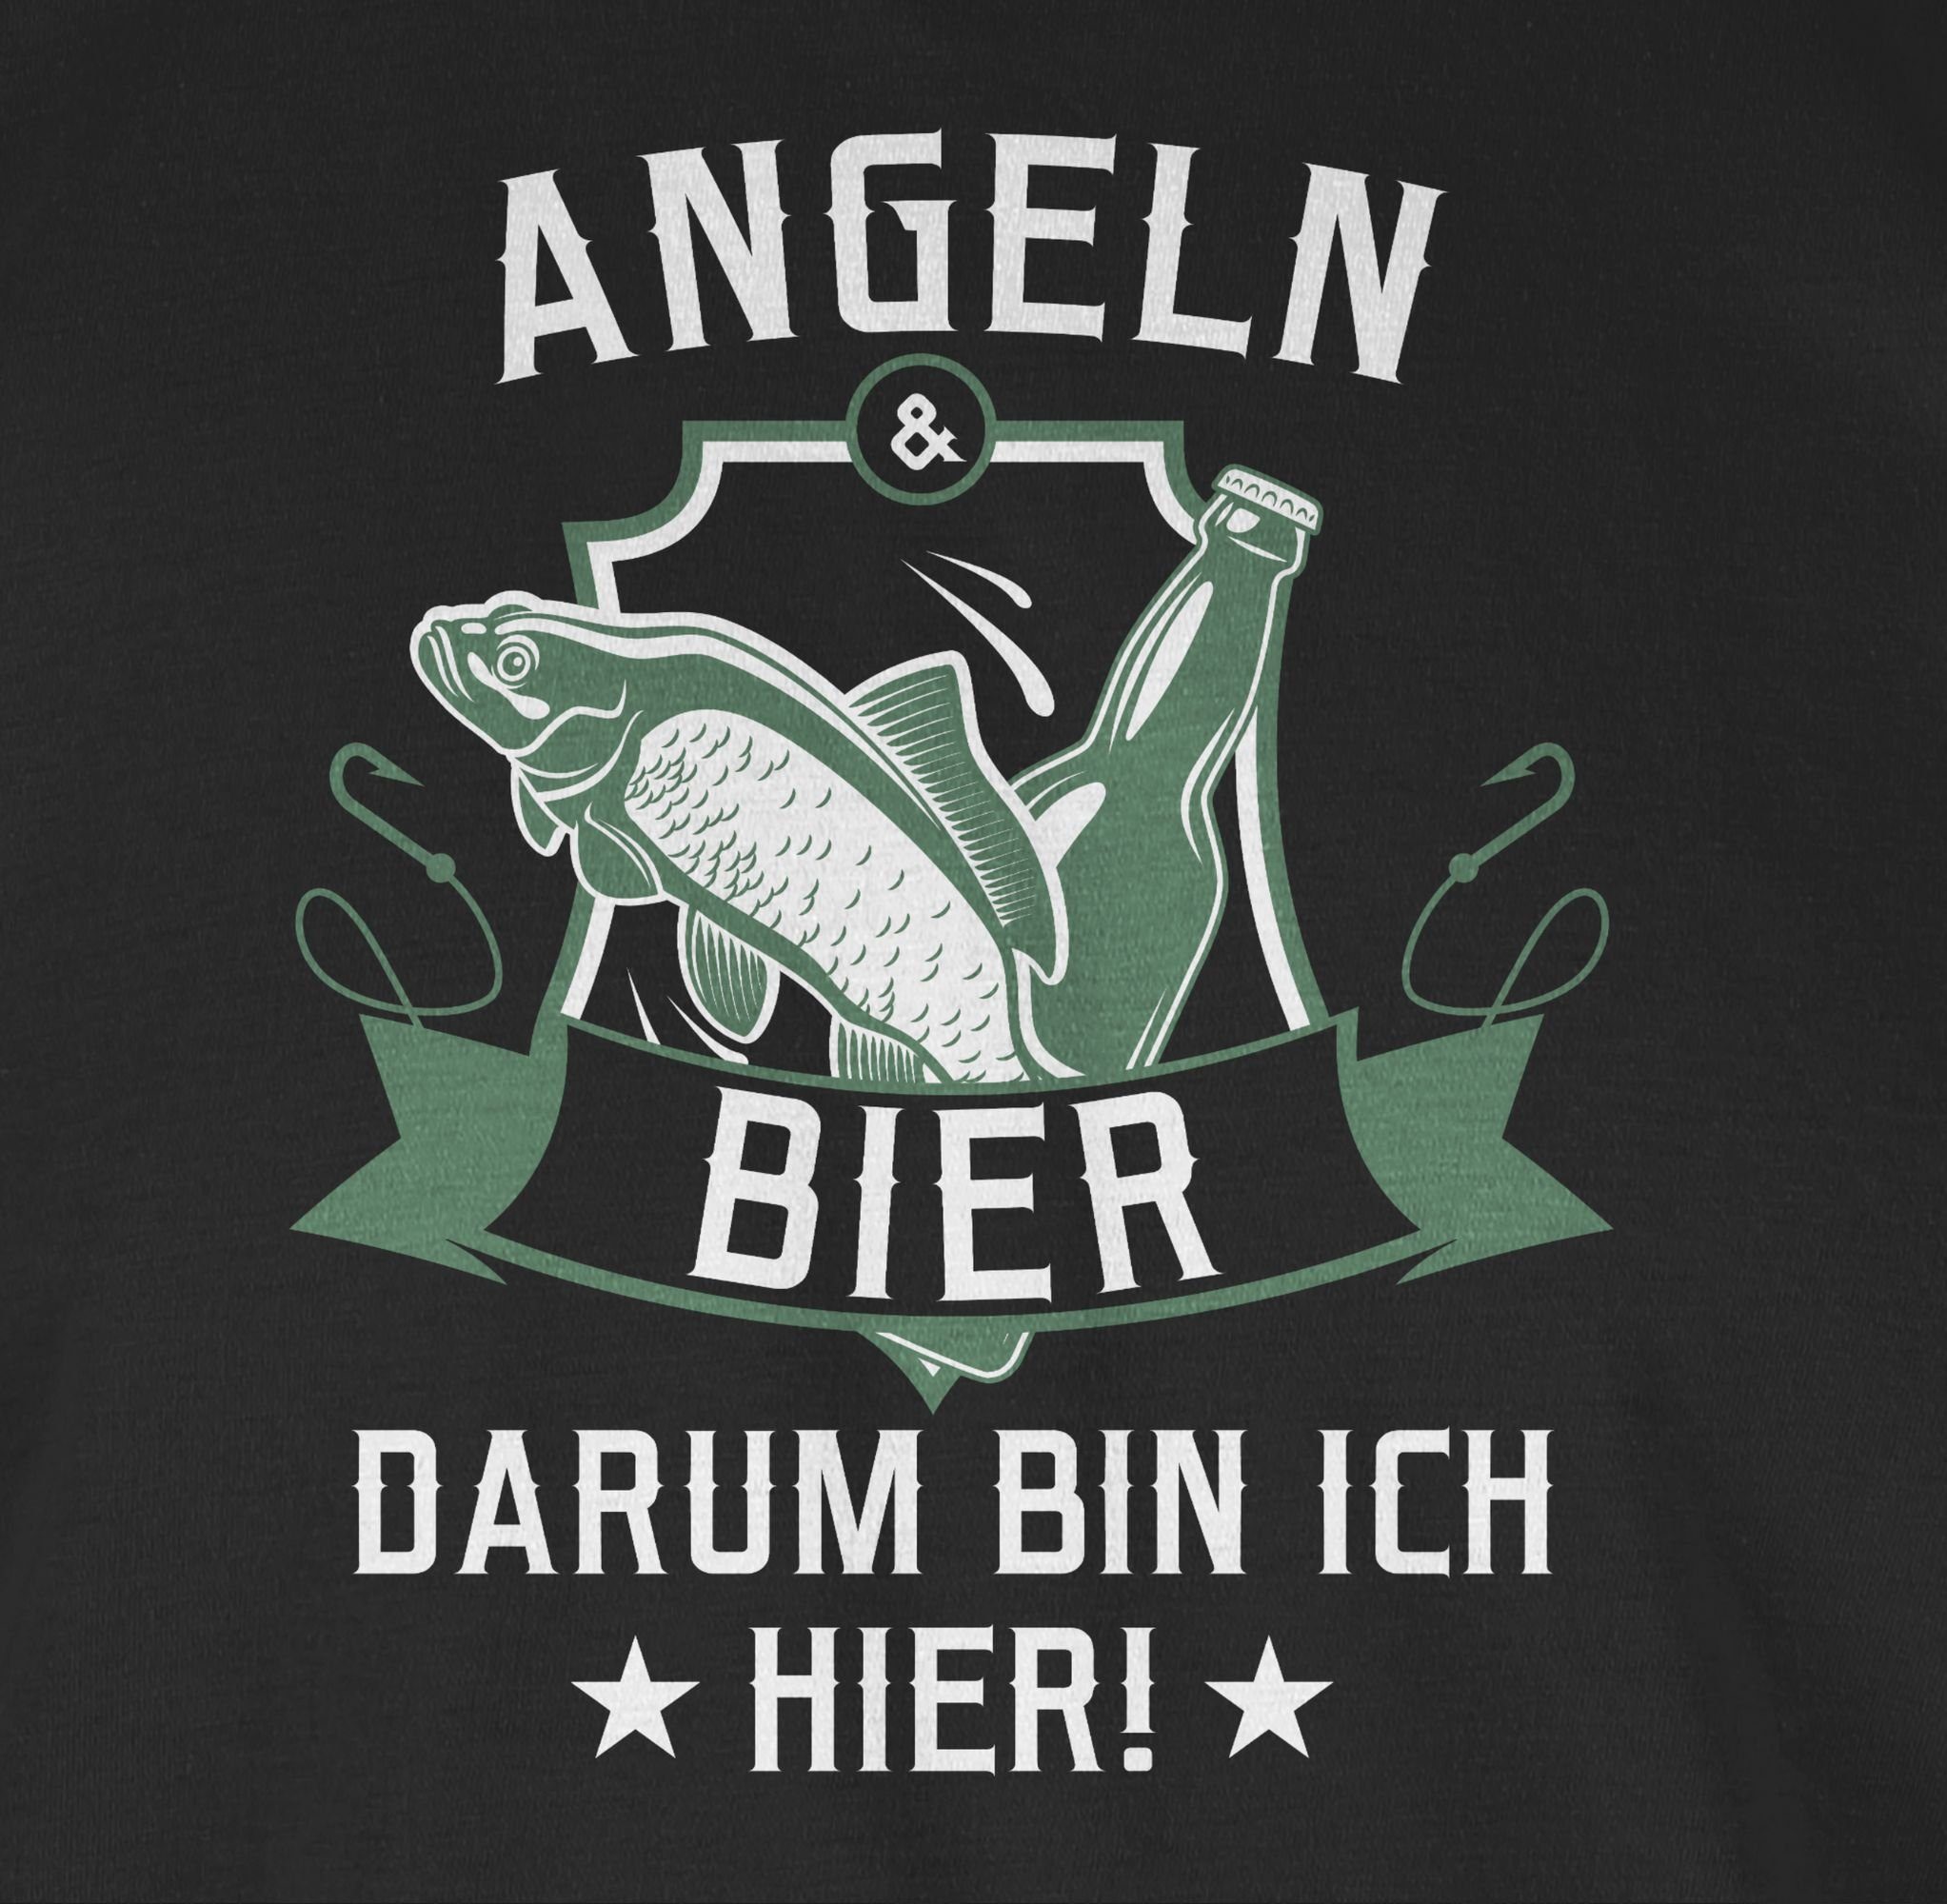 Angeln Schwarz 1 und Bier Shirtracer Angler T-Shirt Geschenke